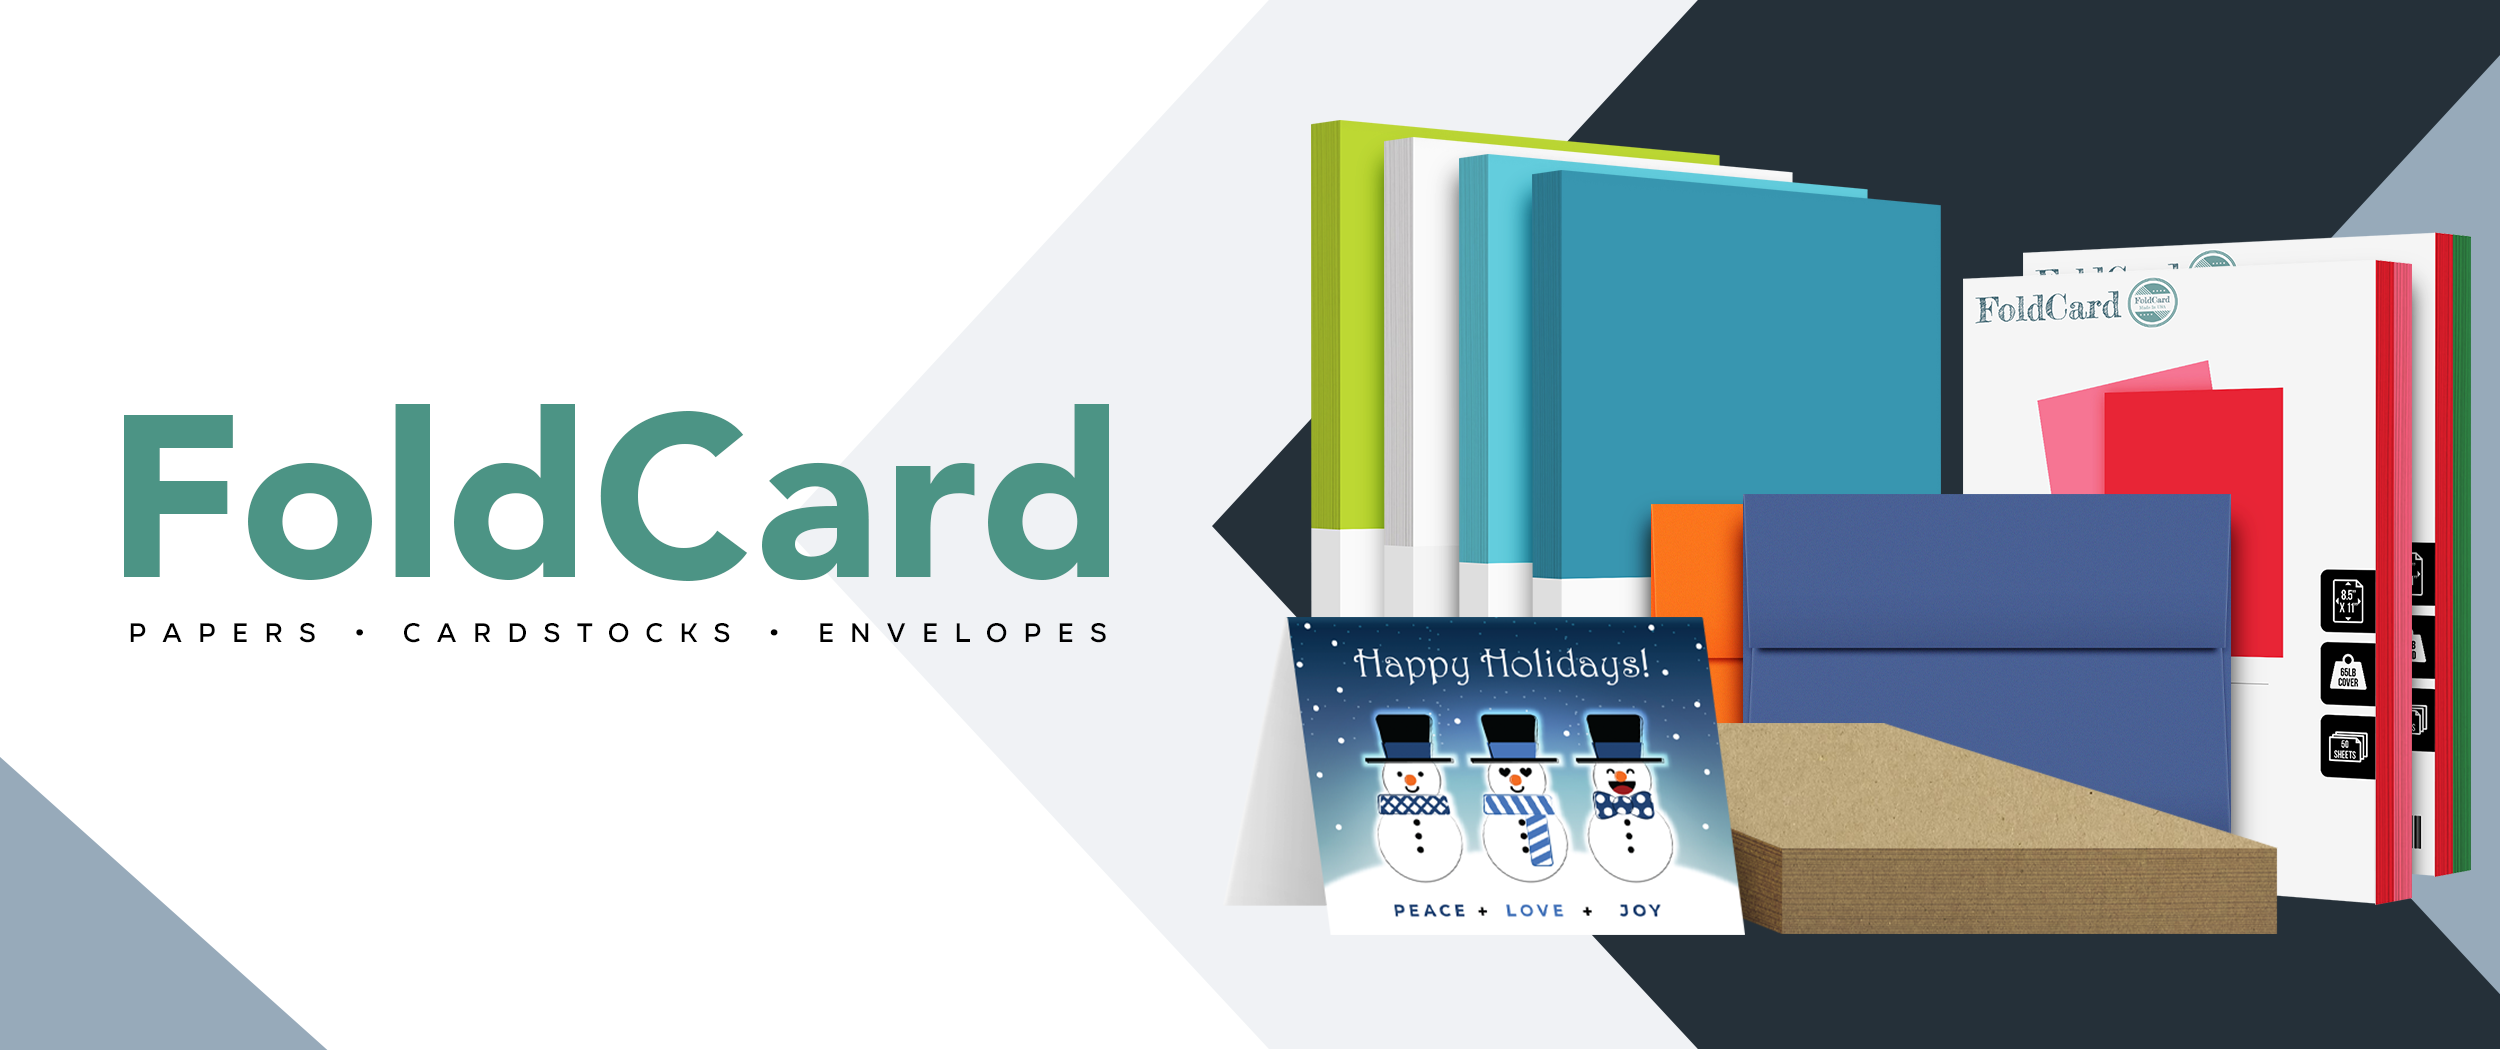 Foldcard Cardstocks